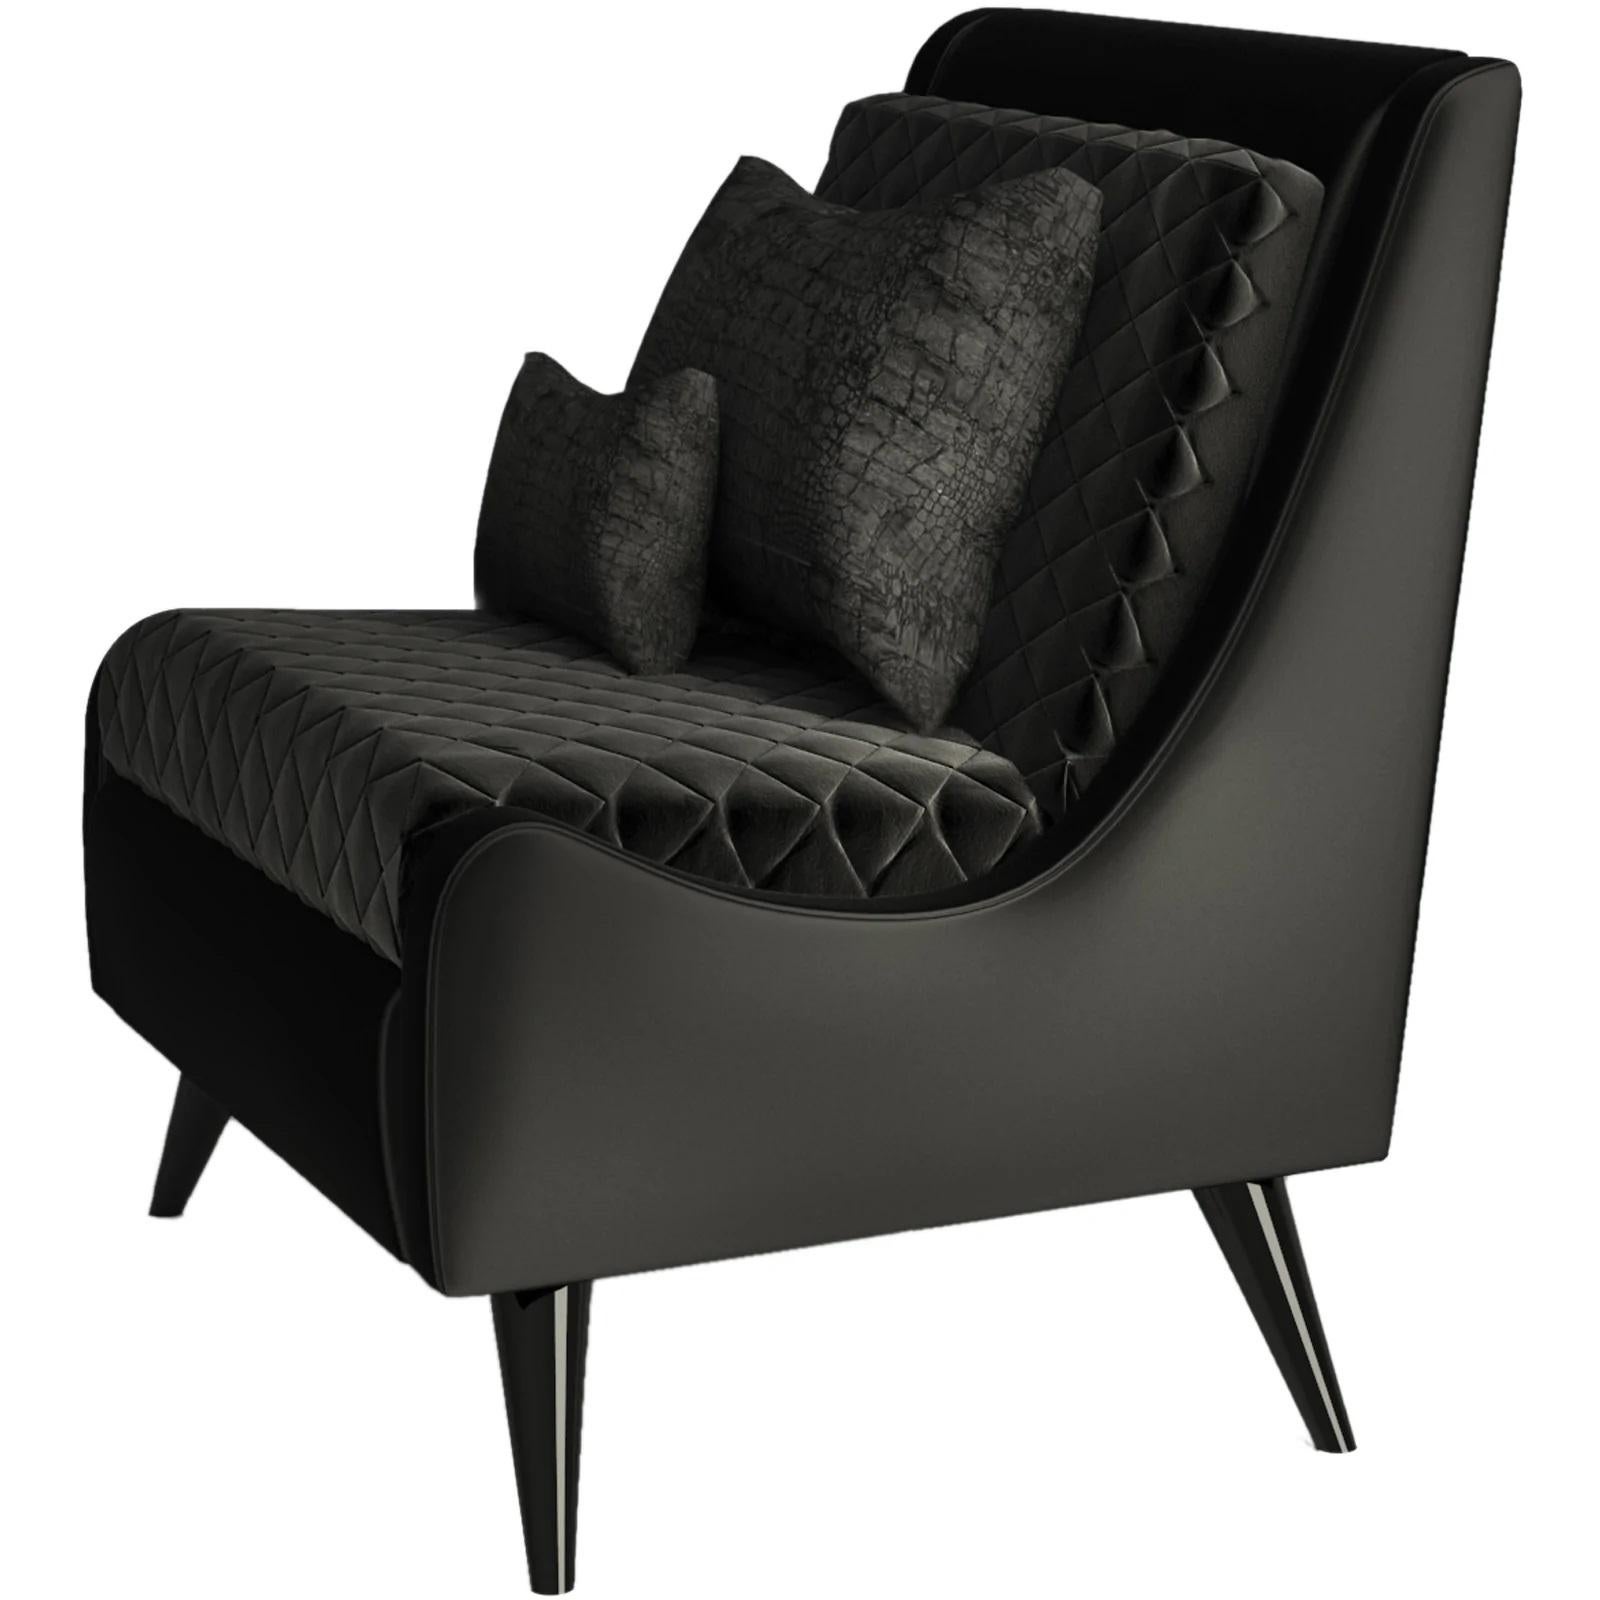 Handgefertigtes Sofa aus schwarzem Satin und schwarzem Baumwollsamt. 
Die Beine sind schwarz lackiert und mit Hochglanzlack versehen.
Setzen Sie sich mit uns in Verbindung, um sich über die COM/COL-Produktion, die Anforderungen und die Anweisungen